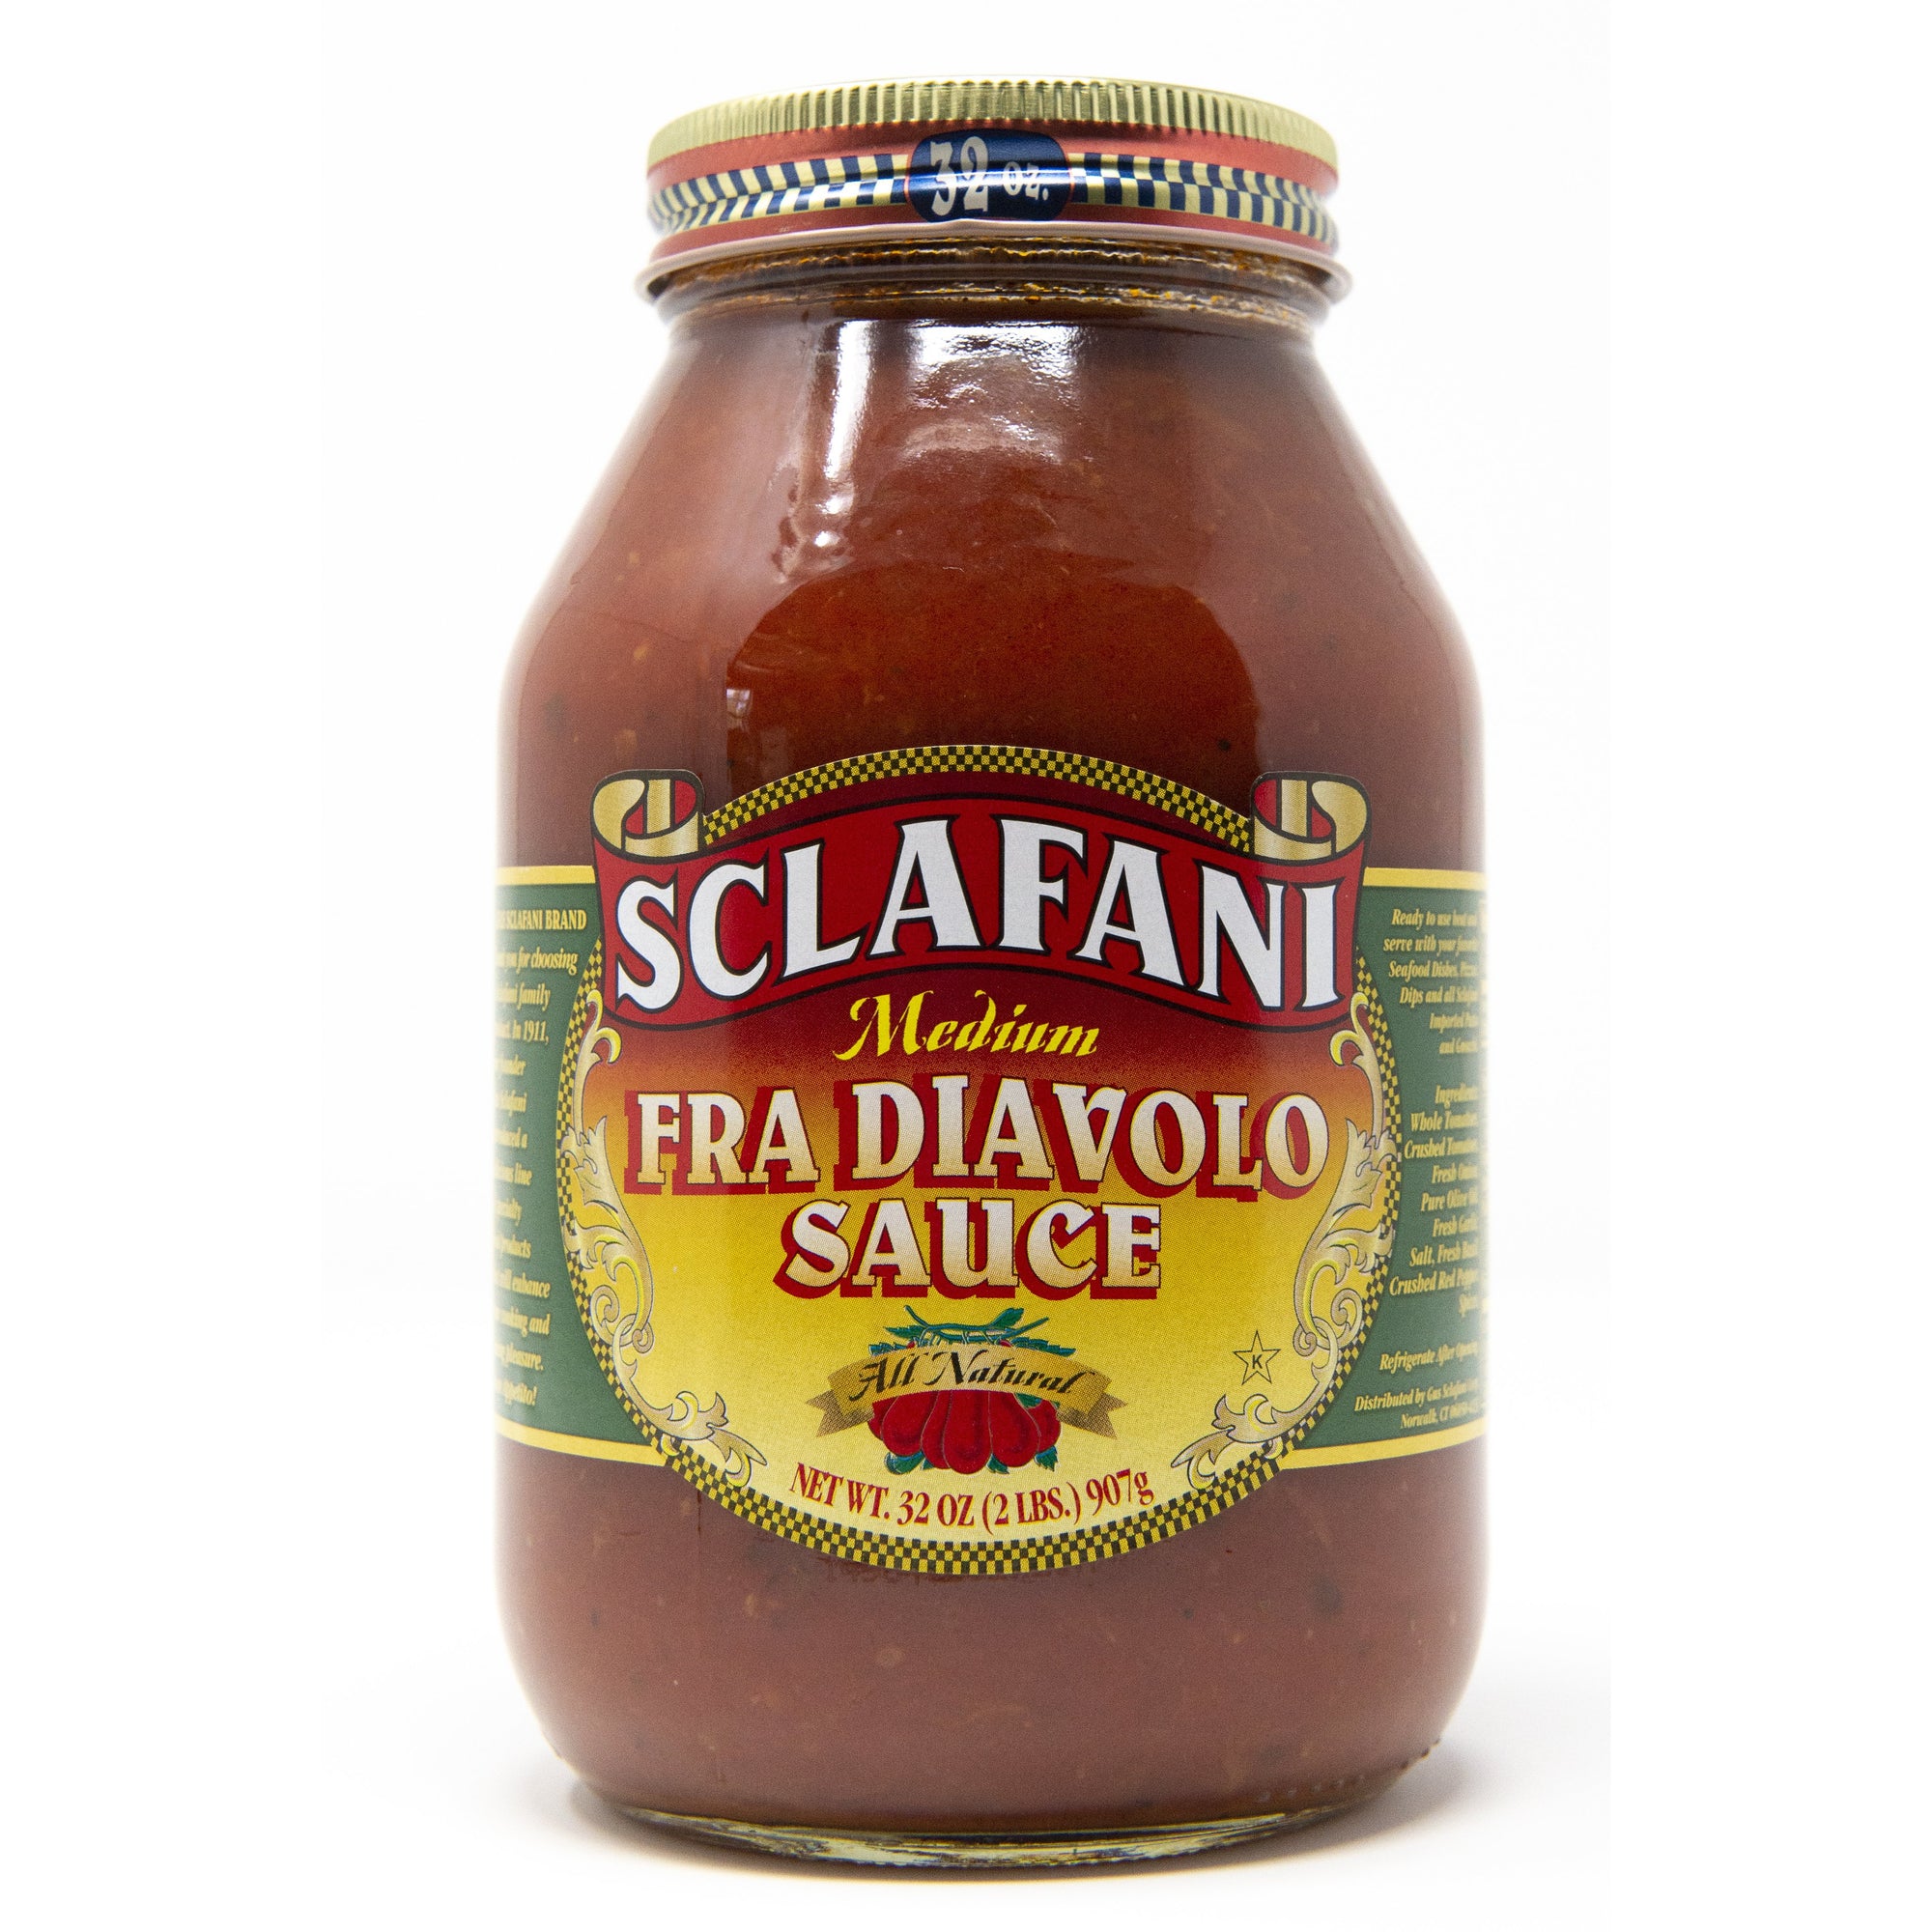 Sclafani Fra Diavolo Sauce 32 oz.